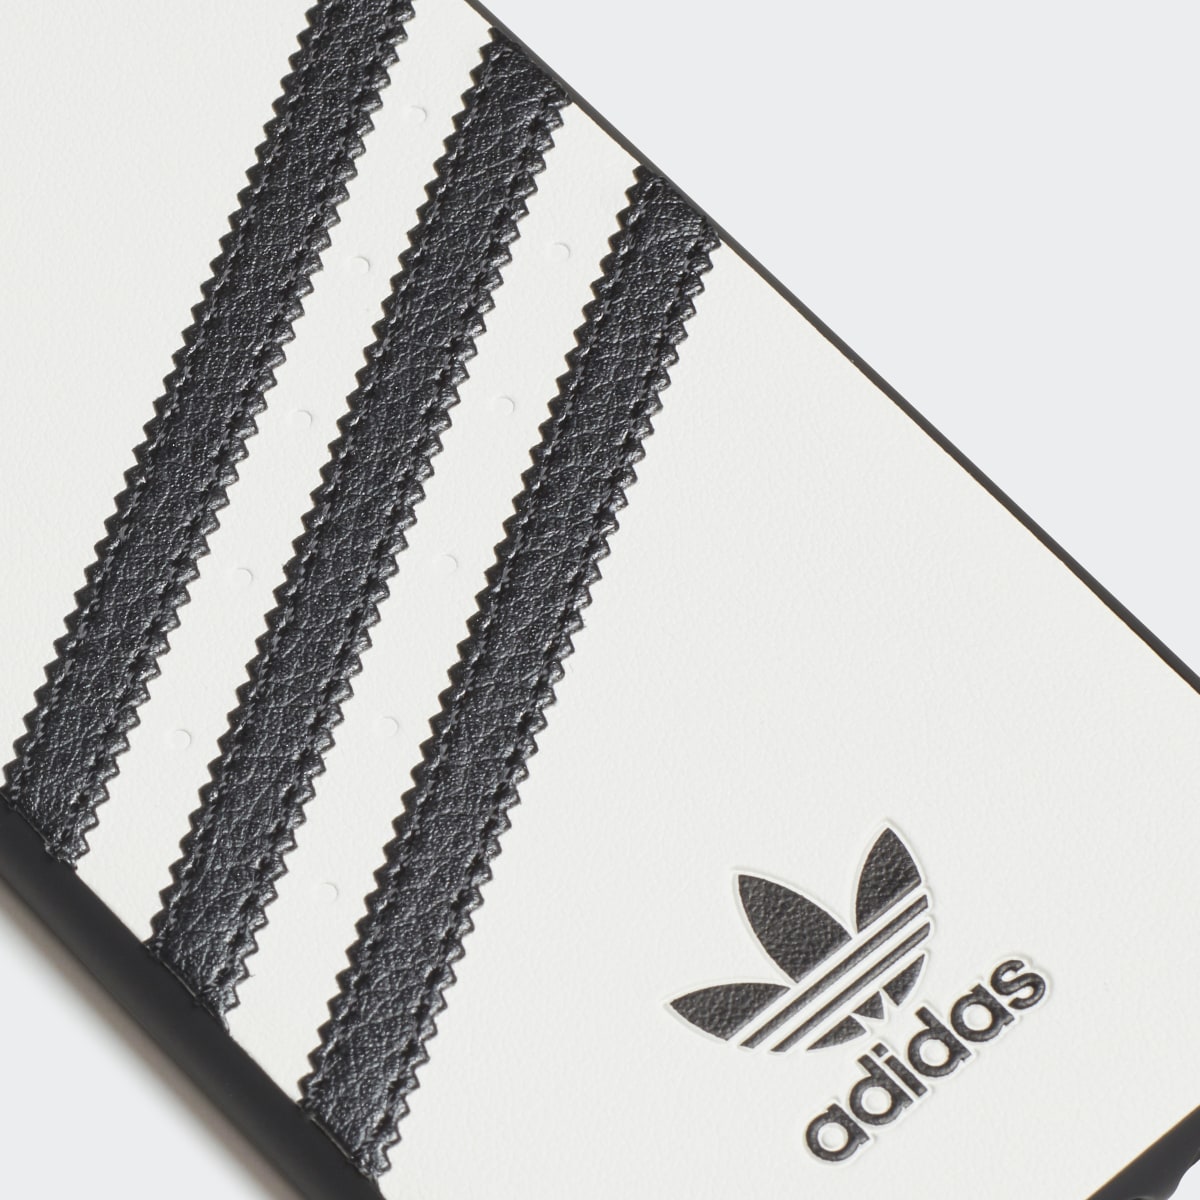 Adidas Molded Case iPhone 8. 5